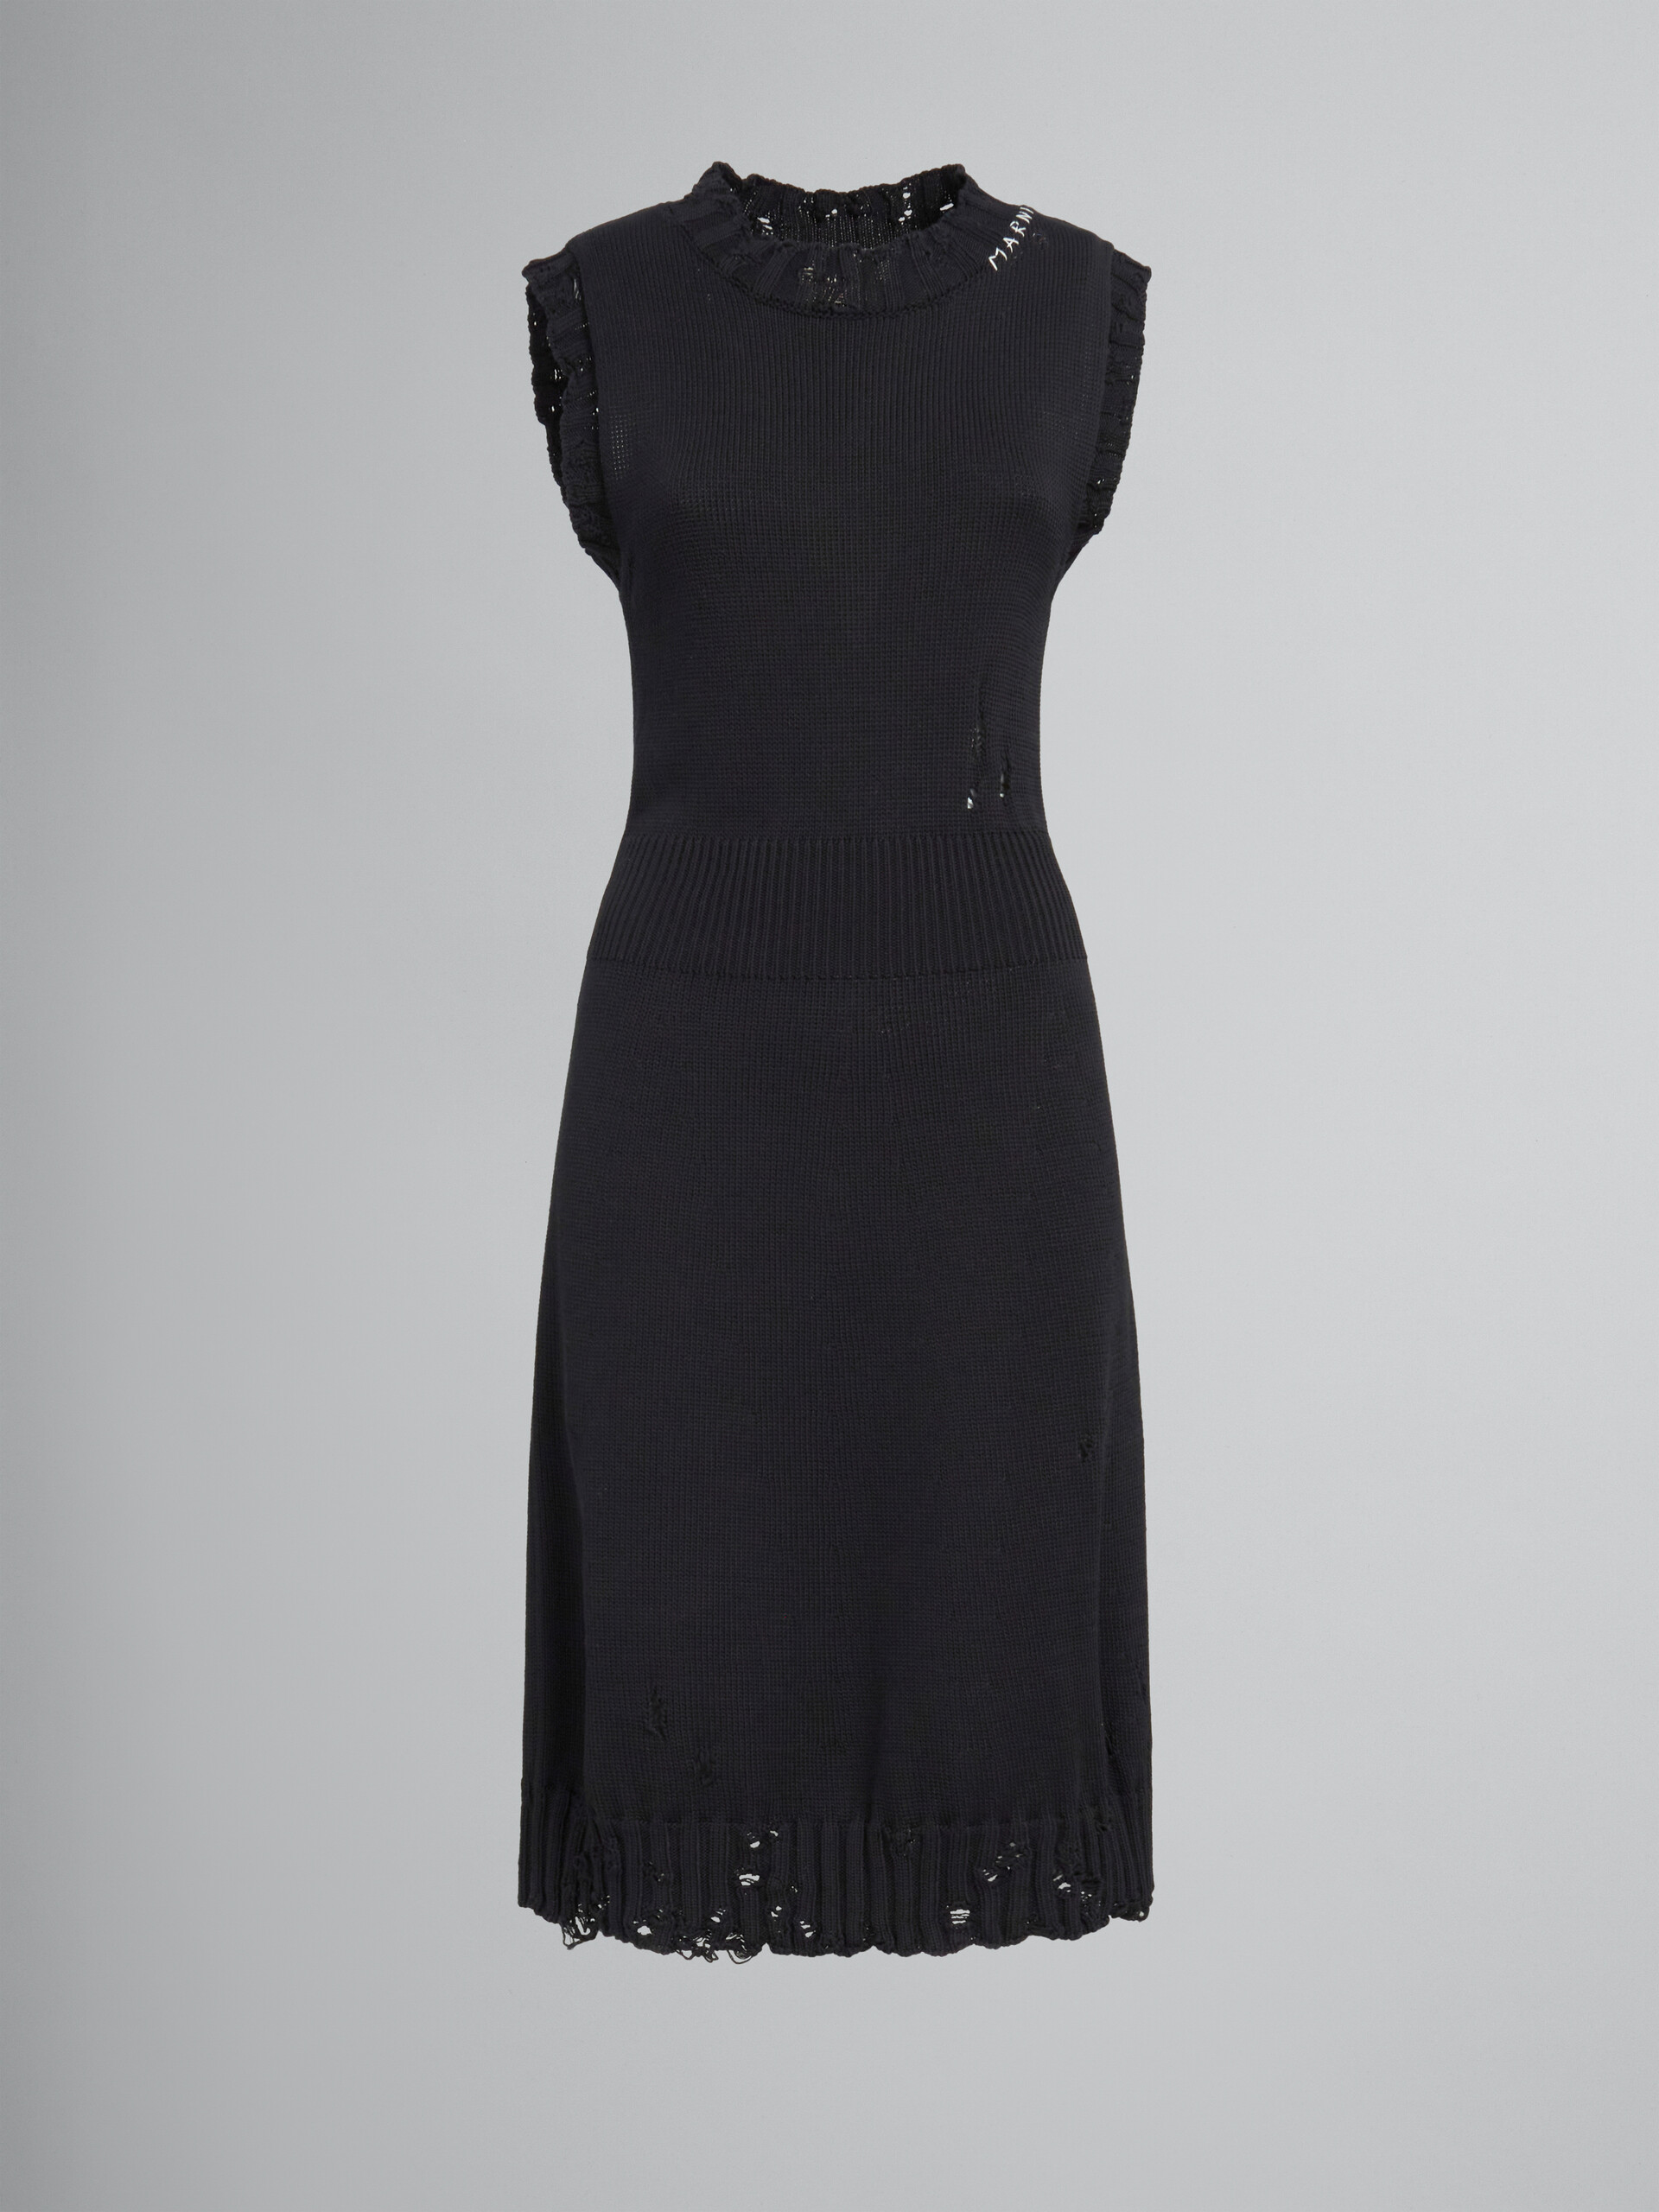 흐트러진 스타일의 블랙 코튼 니트 드레스 - 드레스 - Image 1